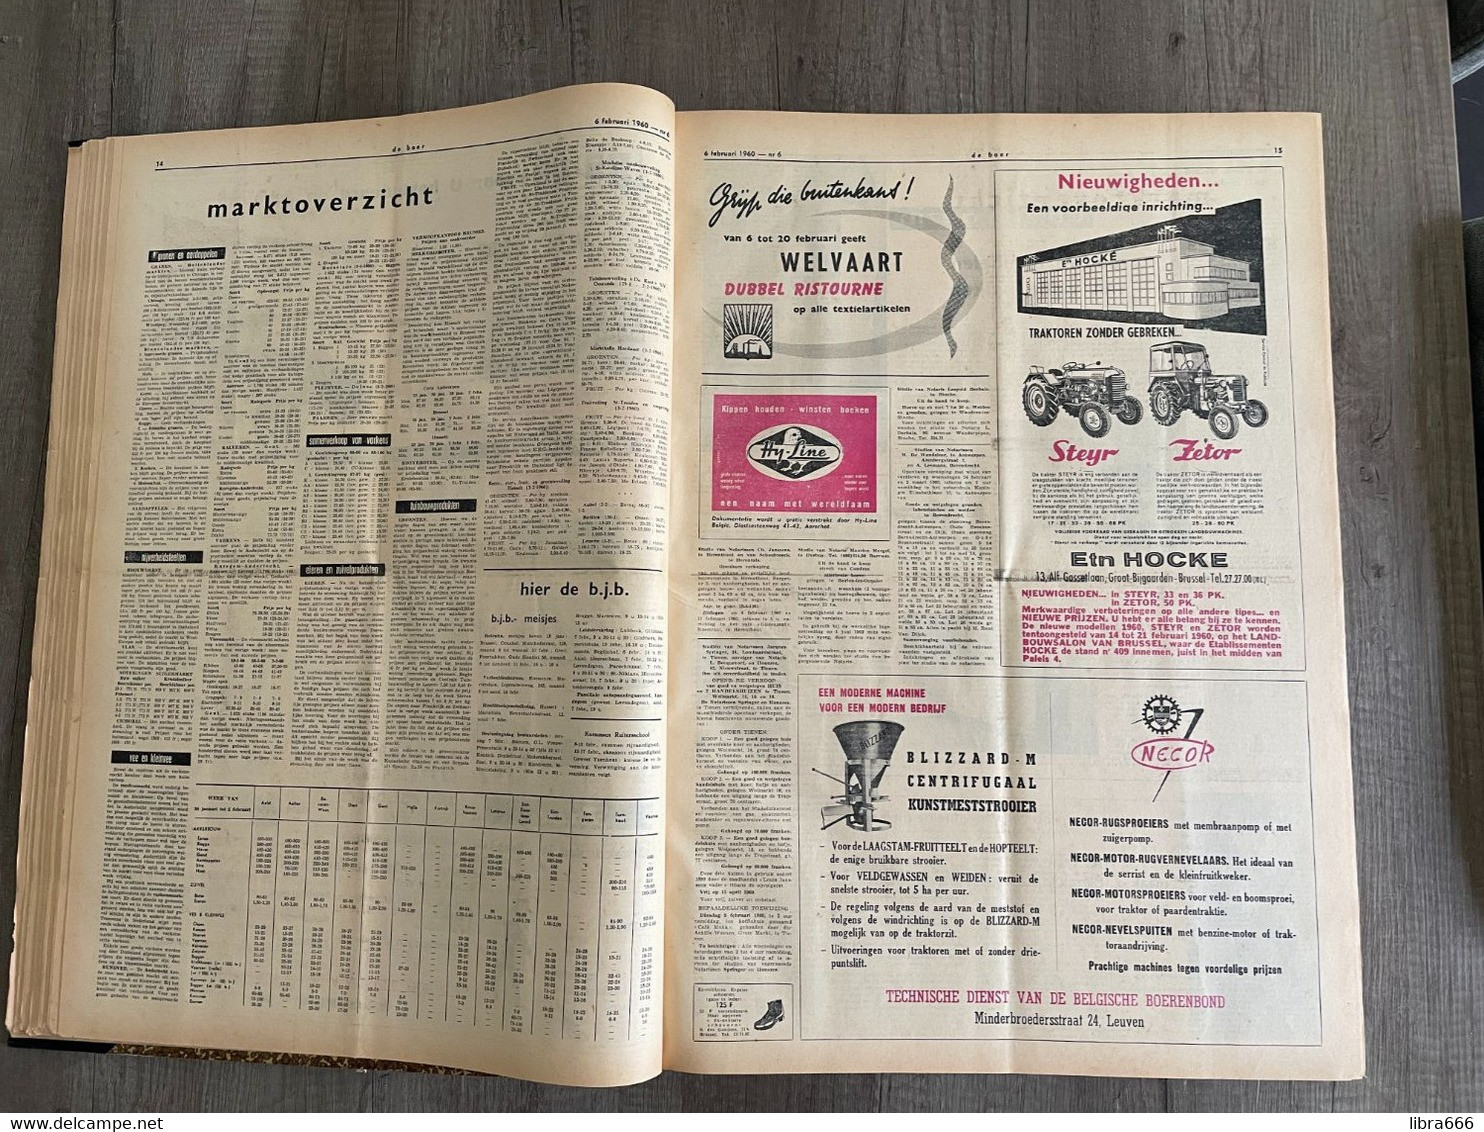 DE BOER - Weekblad van de Belgische Boerenbond Leuven - Volledige jaargang 1960 nr 1-53 ingebonden met inhoudsopgave